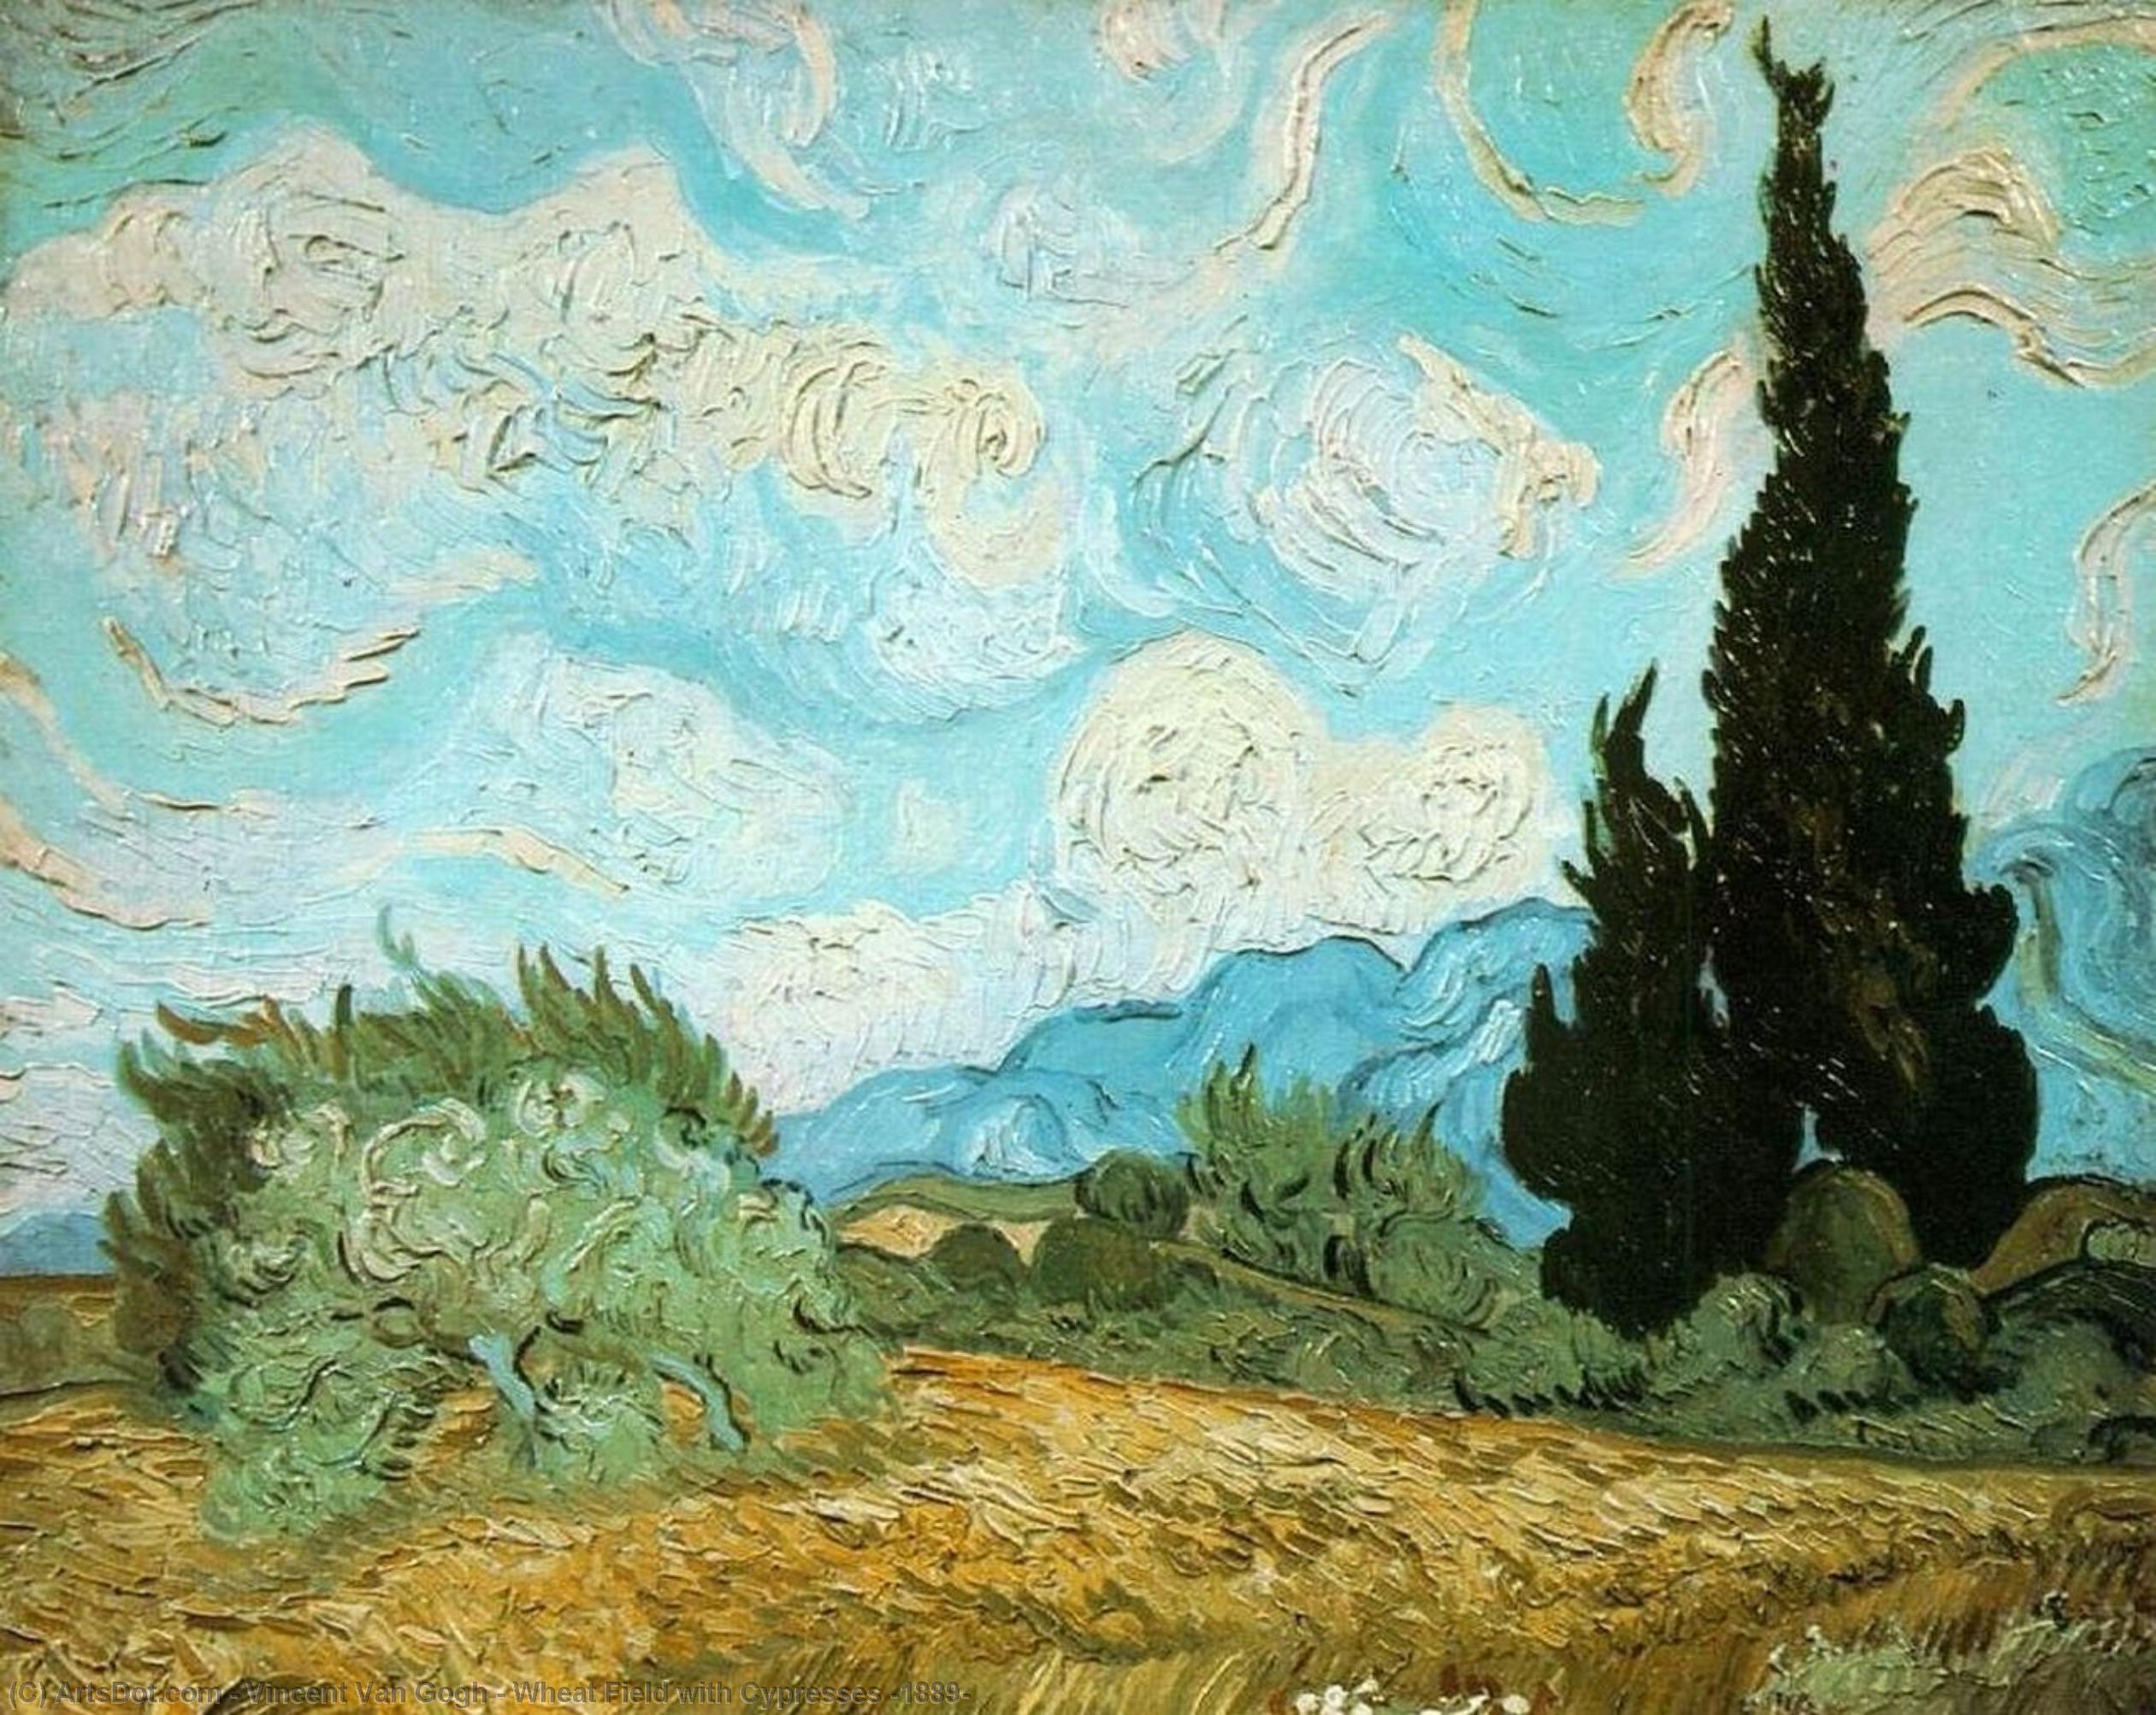 WikiOO.org - אנציקלופדיה לאמנויות יפות - ציור, יצירות אמנות Vincent Van Gogh - Wheat Field with Cypresses [1889]